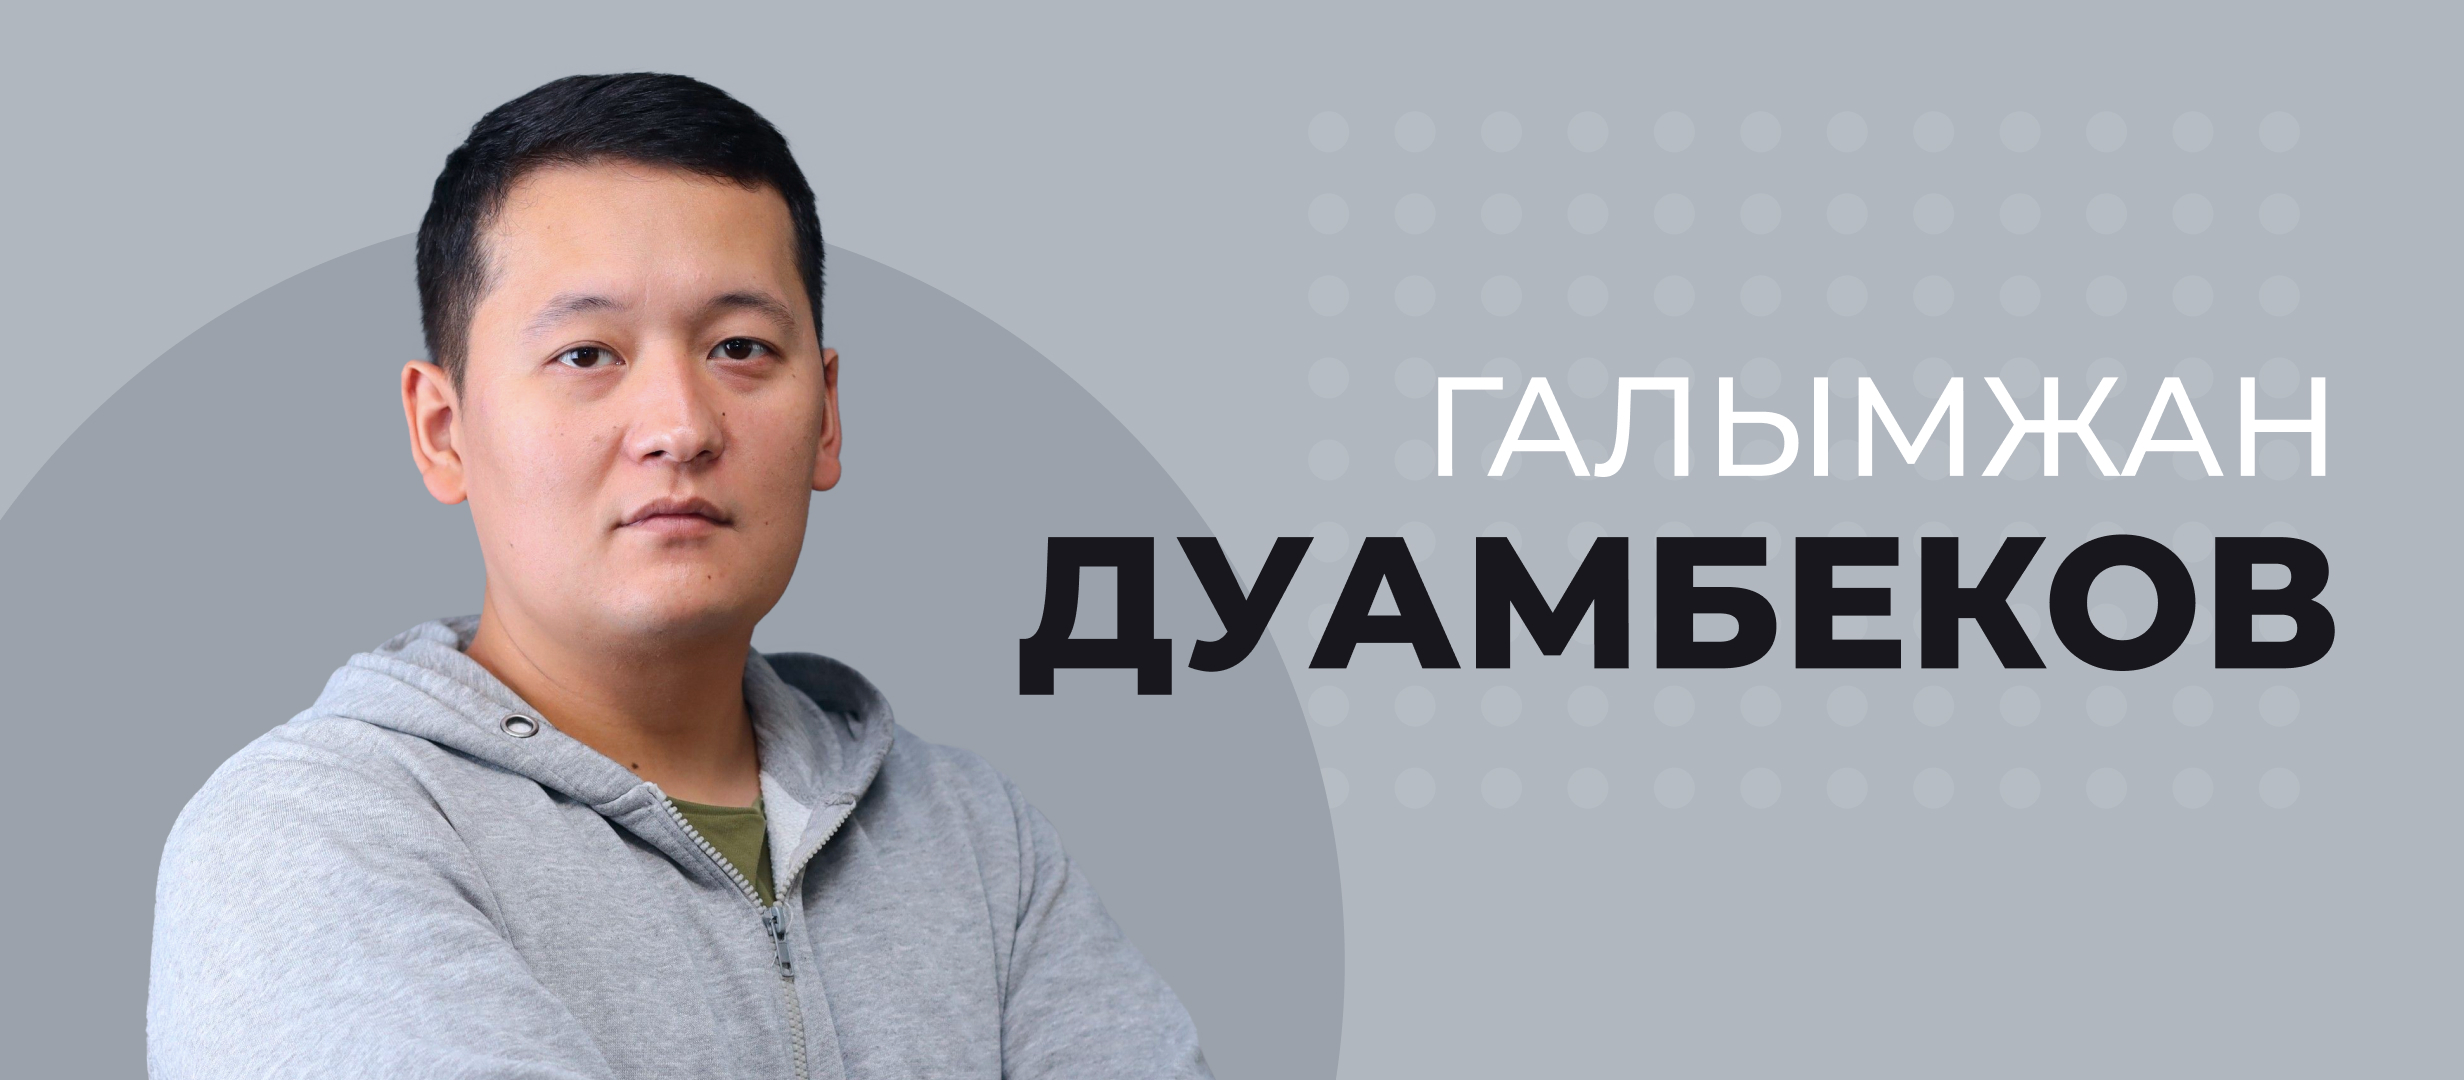 Галымжан Дуамбеков: «Казахстан может стать одним из эталонов игорного бизнеса постсоветского пространства»